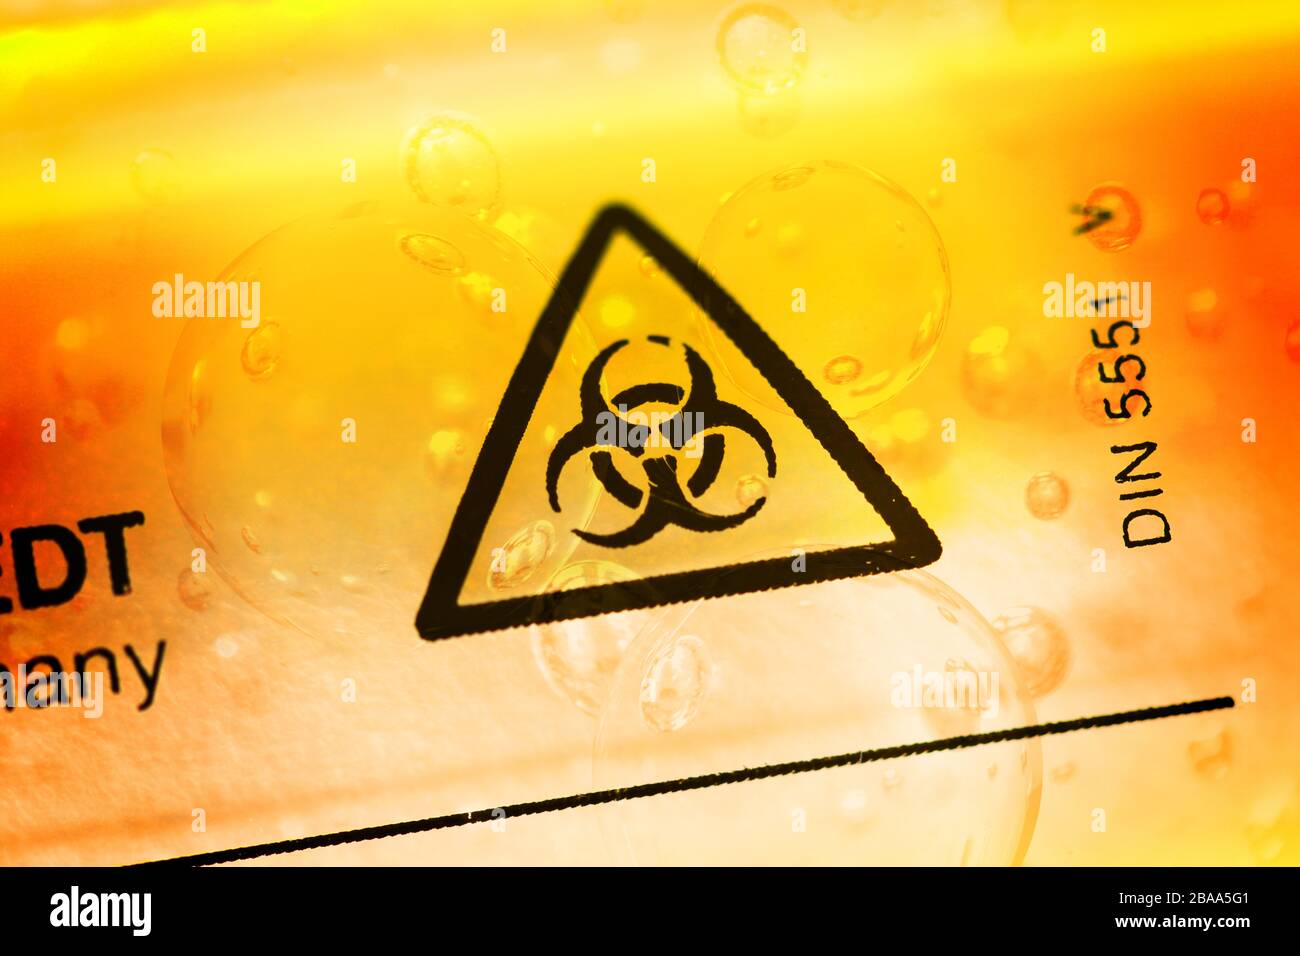 Biologie signes de danger sur un tube de déduction, photo symbolique Coronavirus, Biogefährdungszeichen auf einem Abstrich-Röhrchen, Symbolfoto Coronavirus Banque D'Images